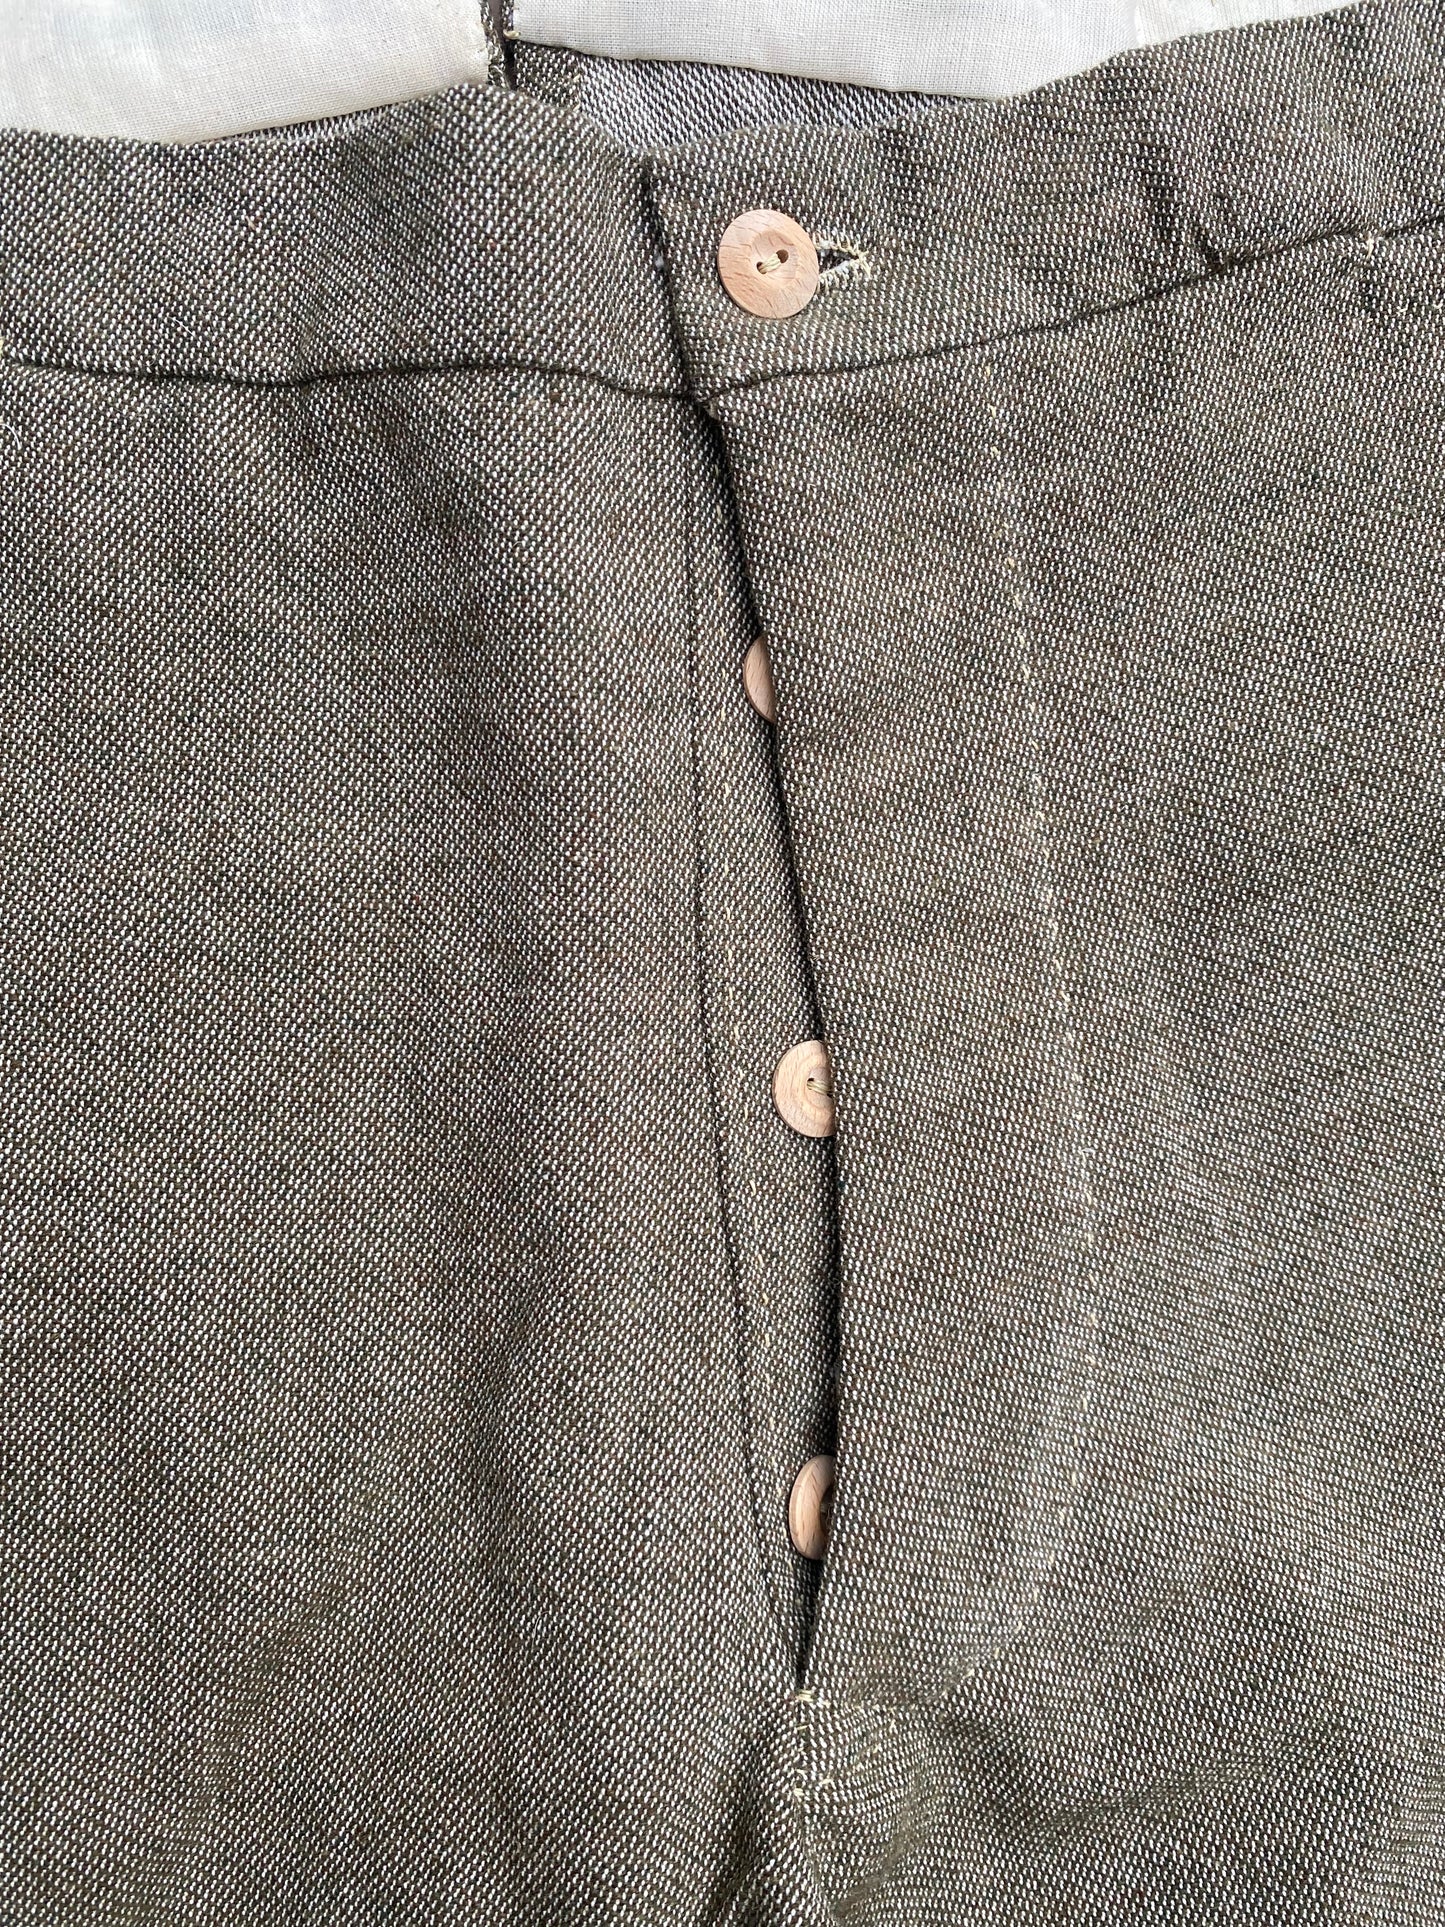 Montgomery Depot Trousers (Mule-Ear Pocket) 1863-1864